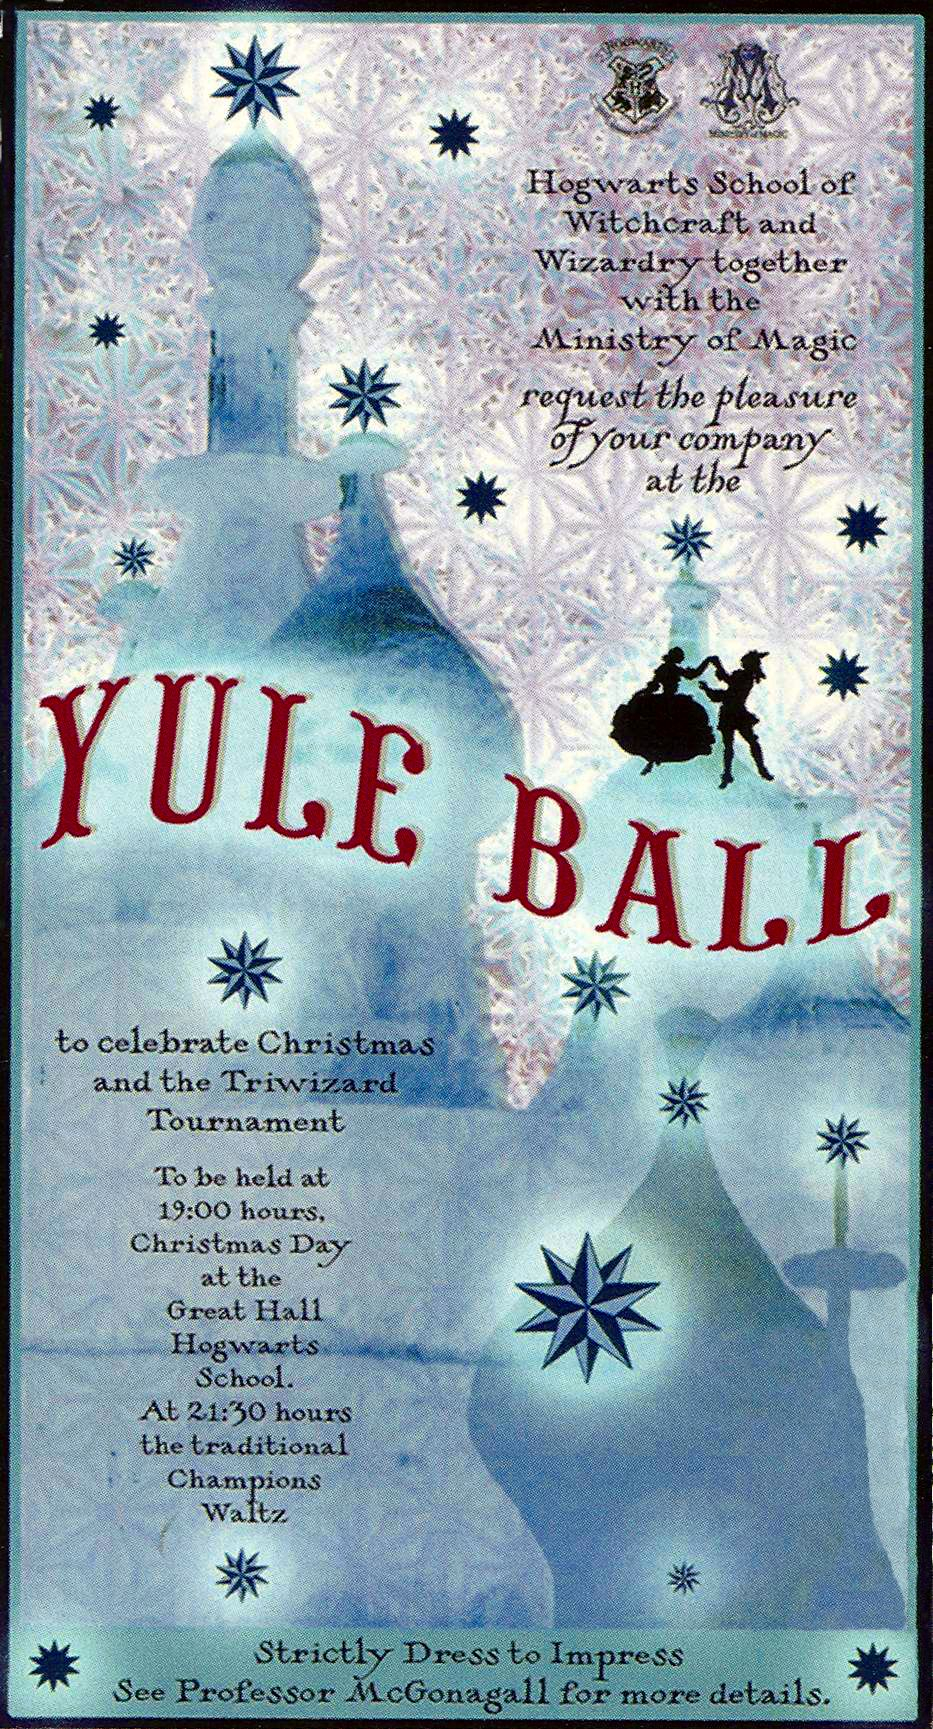 Yule Ball Invitation Prom 2017 Baile Decoracin De Unas regarding measurements 933 X 1729